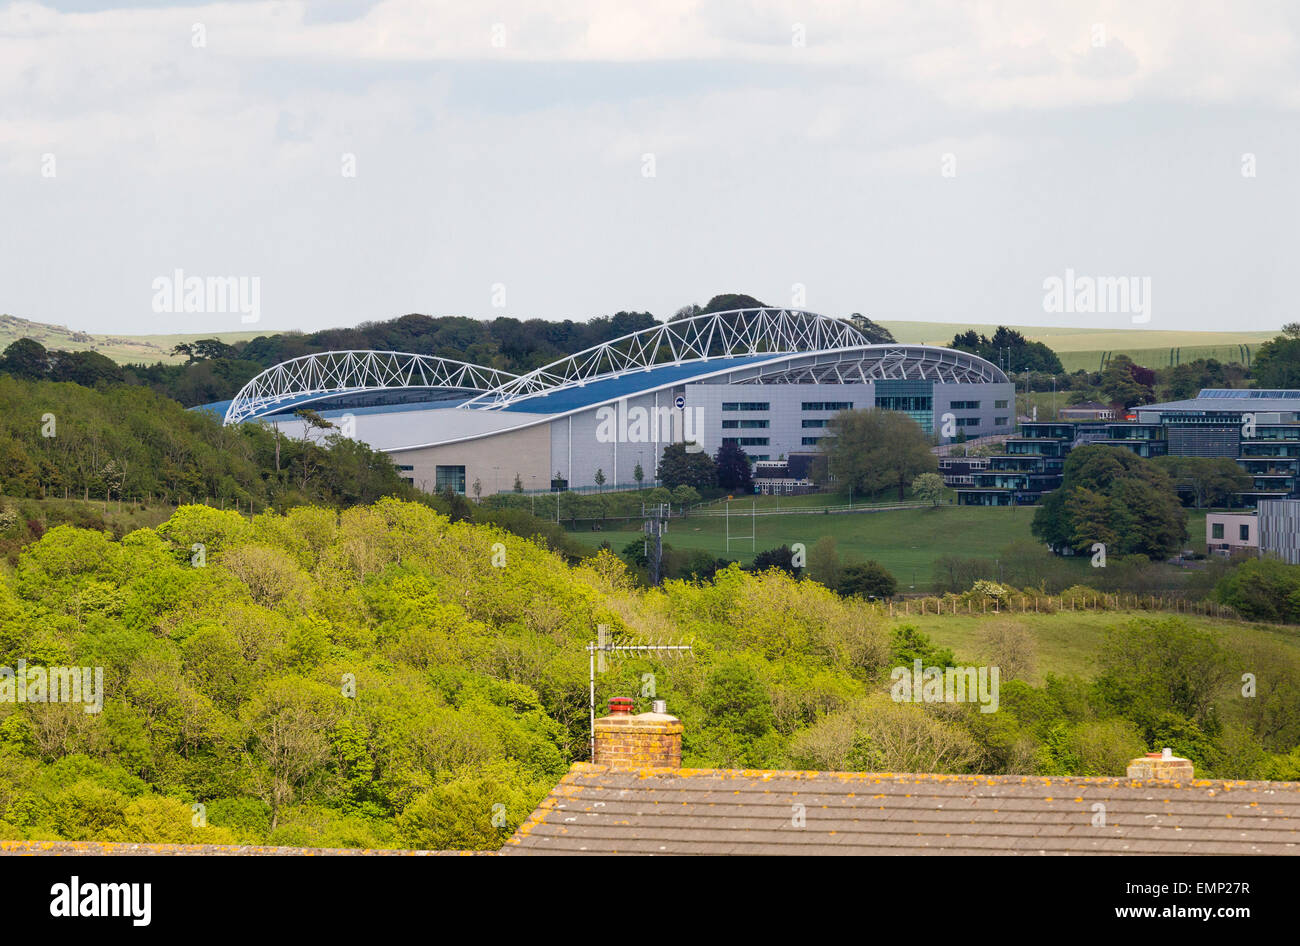 La Amex Stadium está a Brighton y Hove Albion Football Club de la tierra. Foto de stock